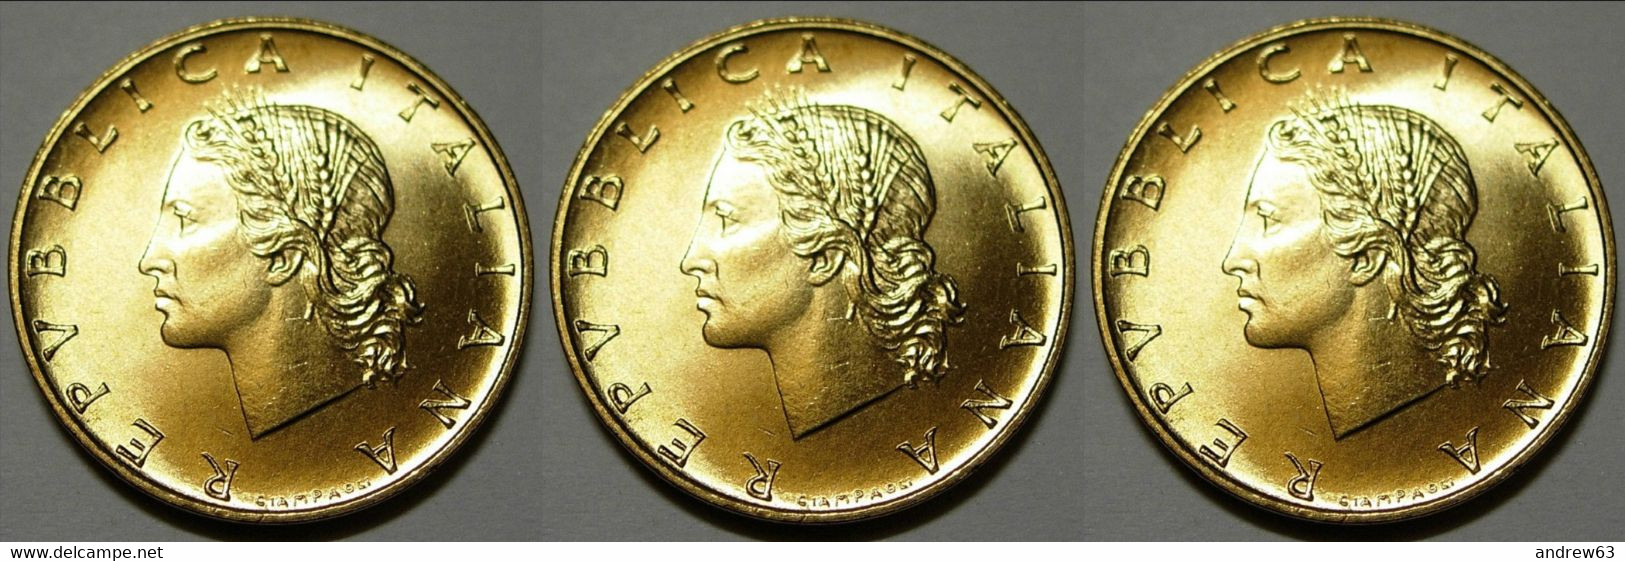 ITALIA - Lire 20 1999 - FDC/Unc Da Rotolino/from Roll 3 Monete/3 Coins - 20 Liras